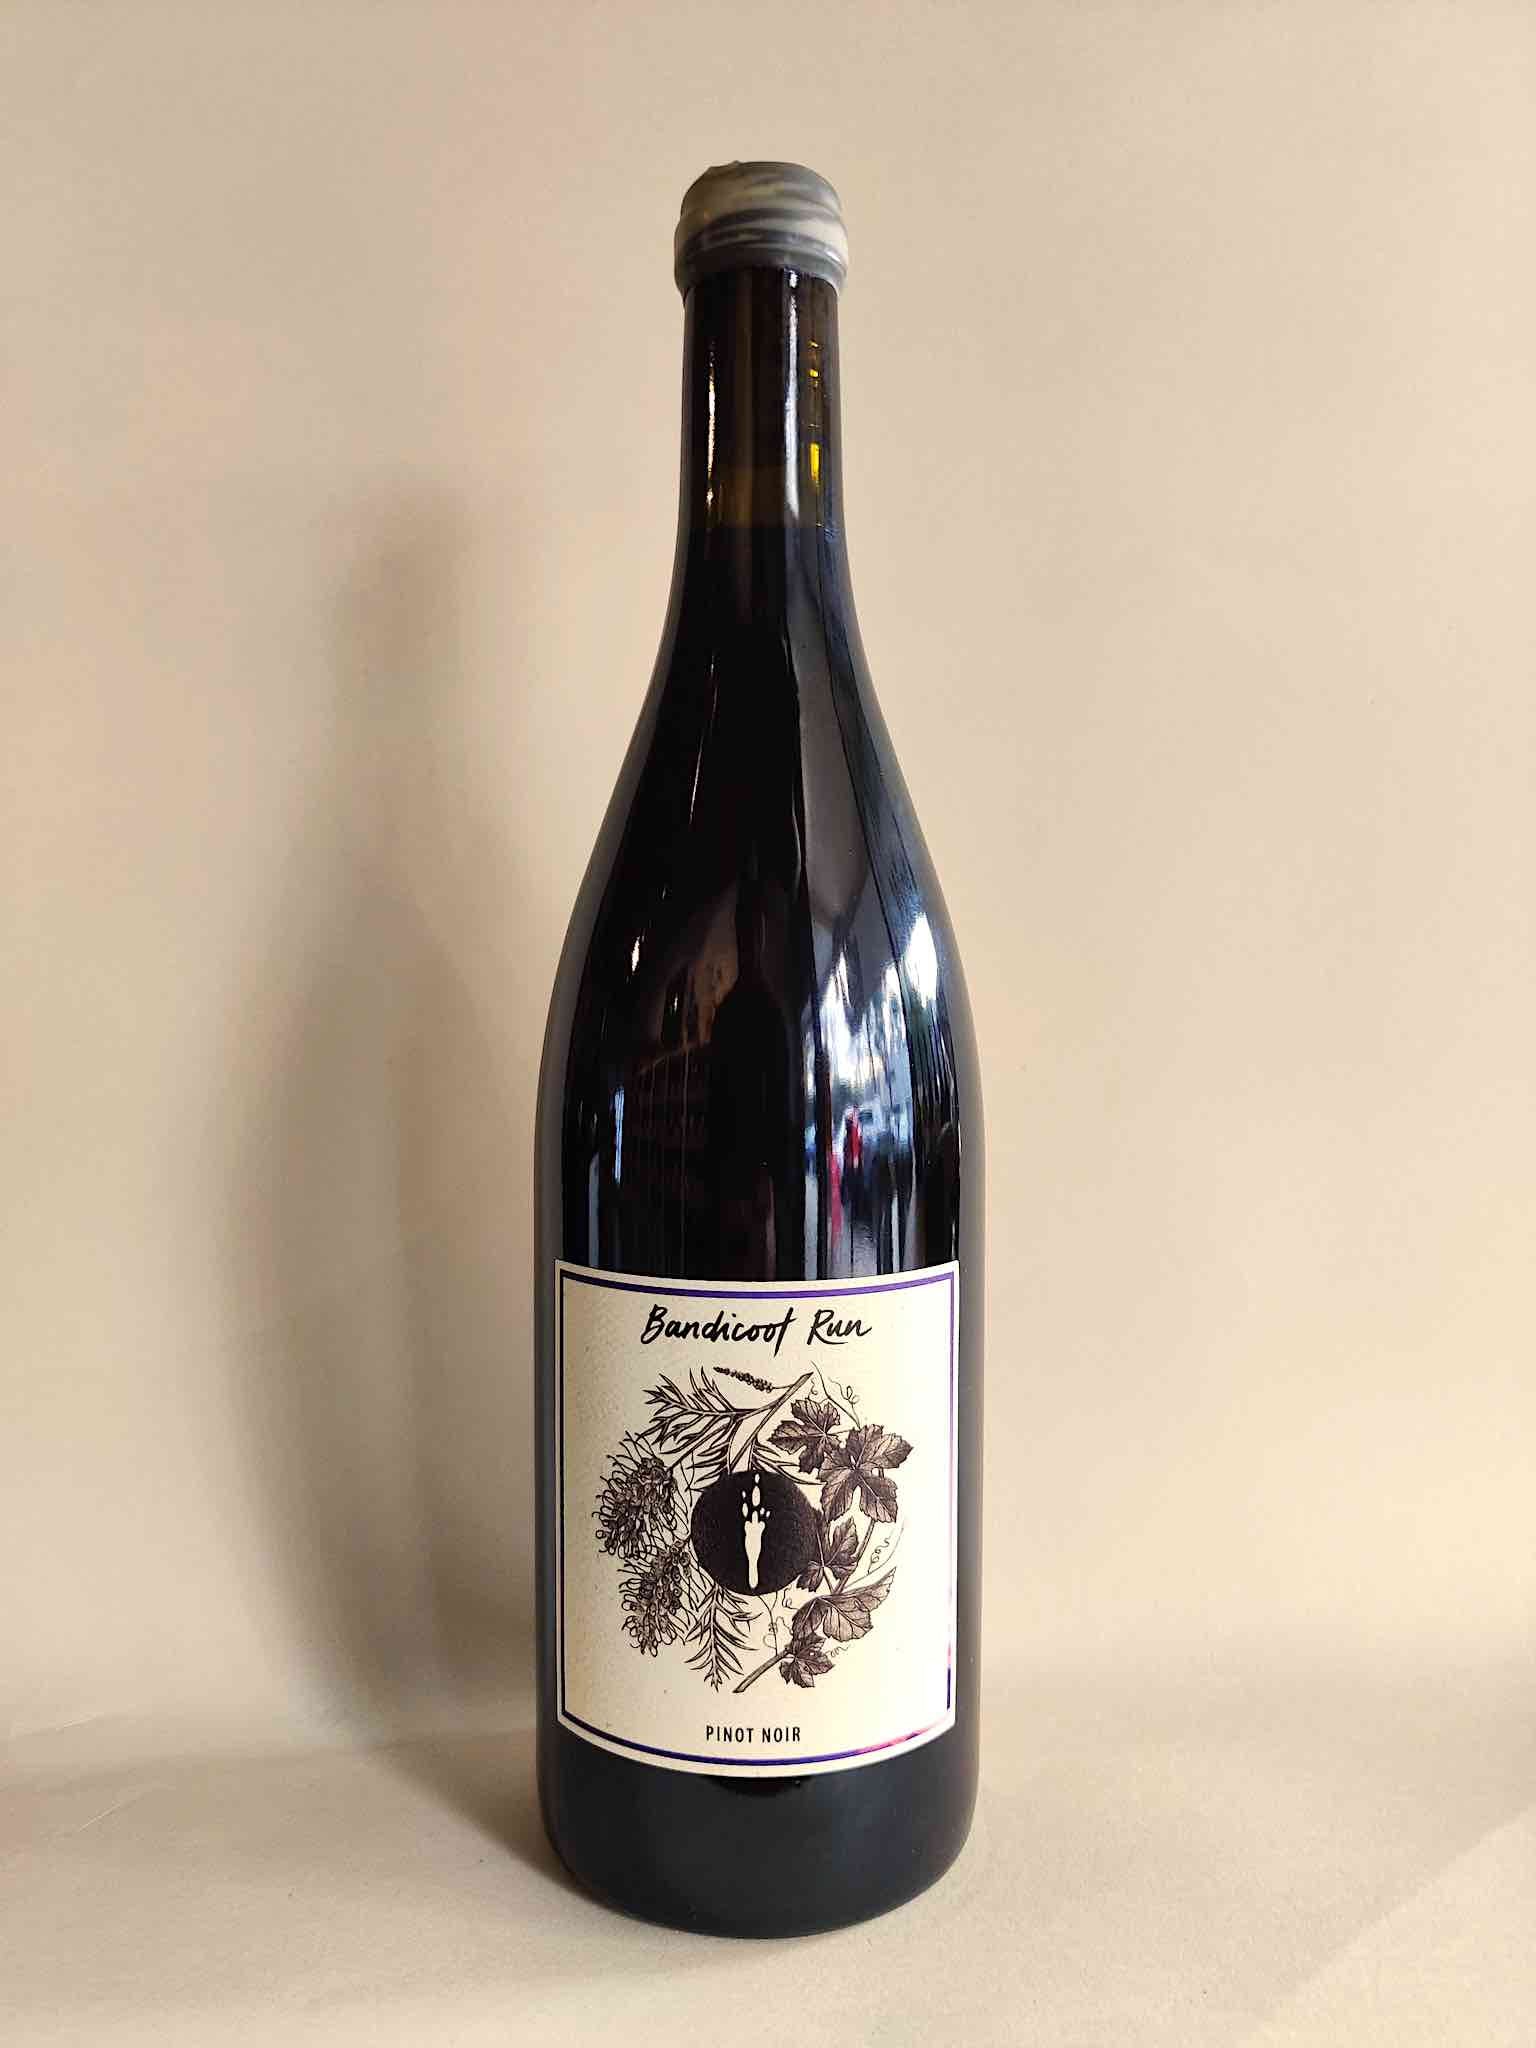 A bottle of Bandicoot Run Pinot Noir from Gippsland Victoria.